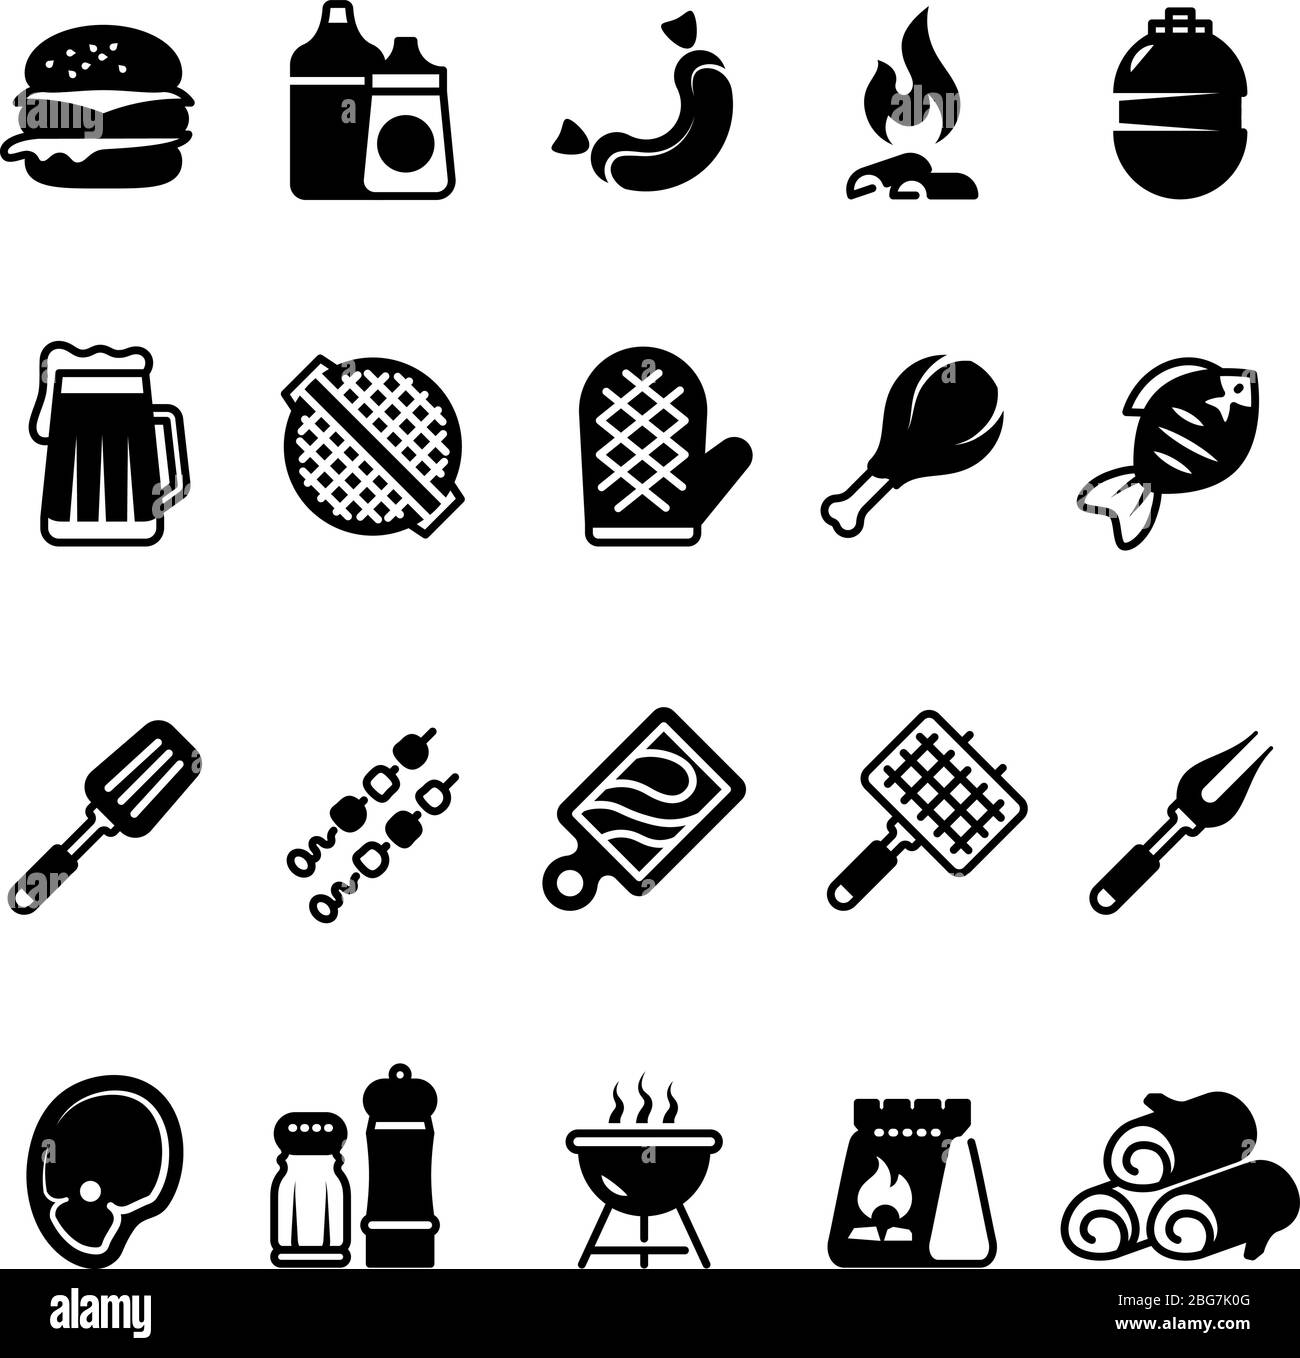 Grille des icônes de cuisine extérieure. barbecue familial, symboles pique-nique d'été. Pictogrammes isolés pour barbecue de viande et de légumes. Barbecue grill et steak de viande barbecue, vecteur Illustration de Vecteur